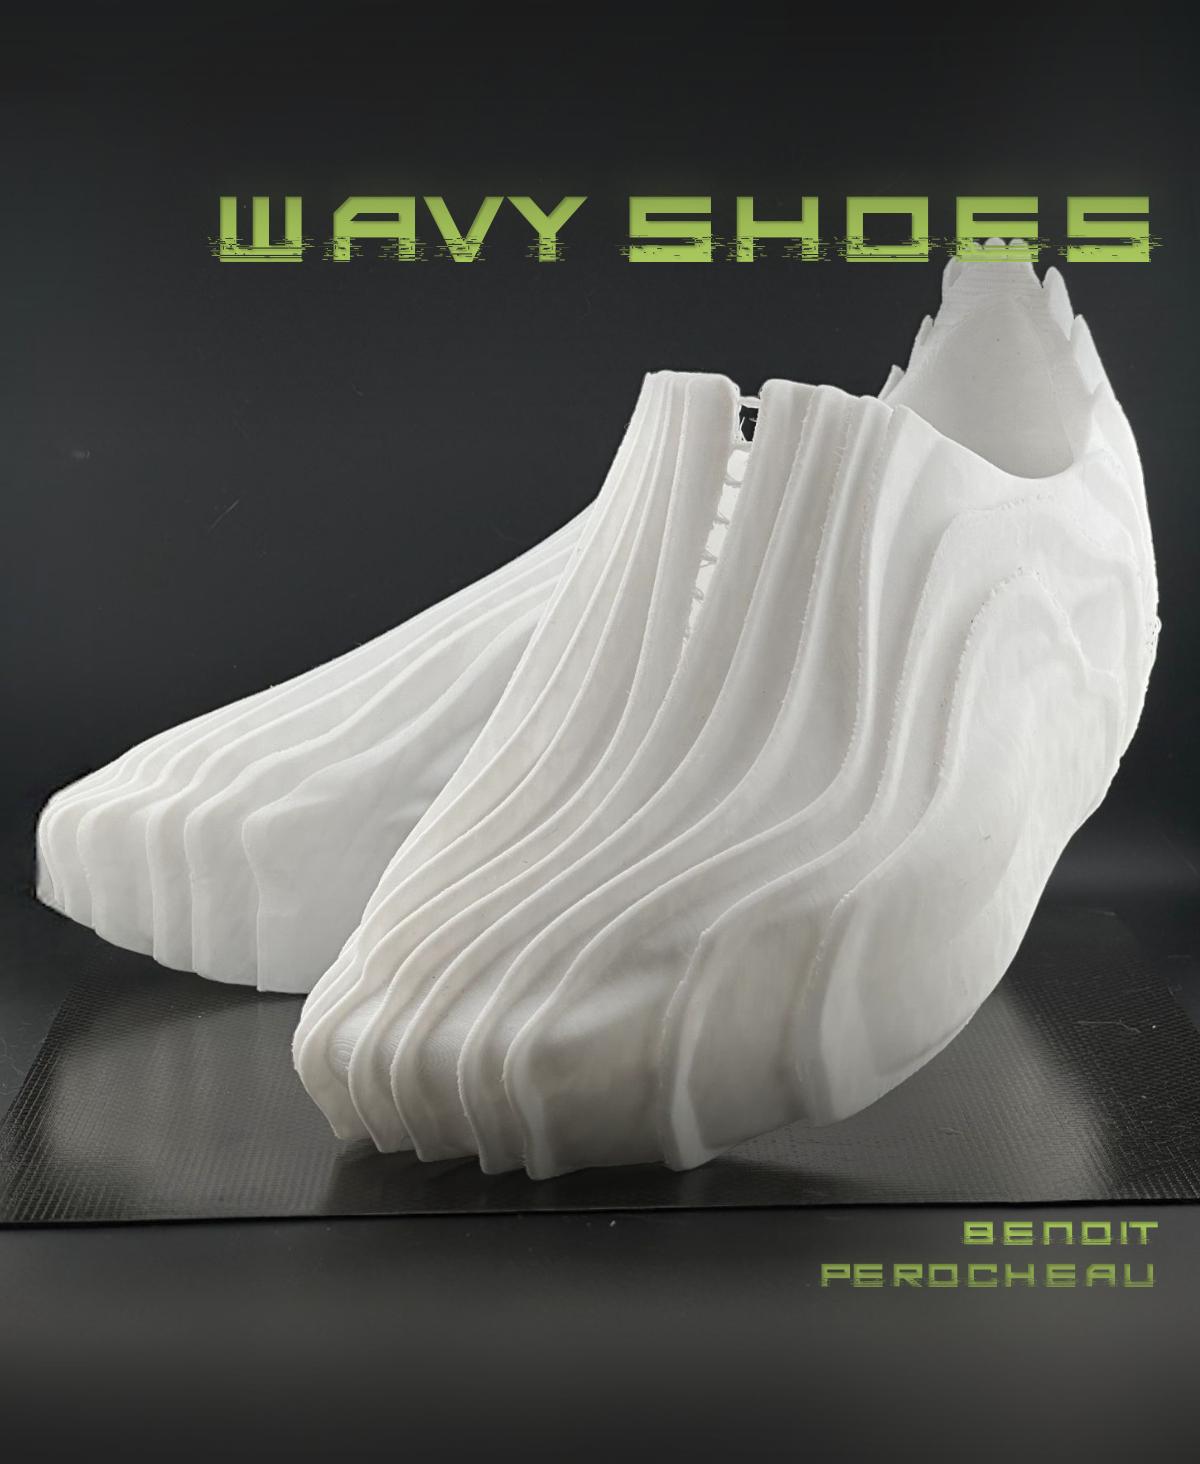 Wearable Wavy shoes 3d model